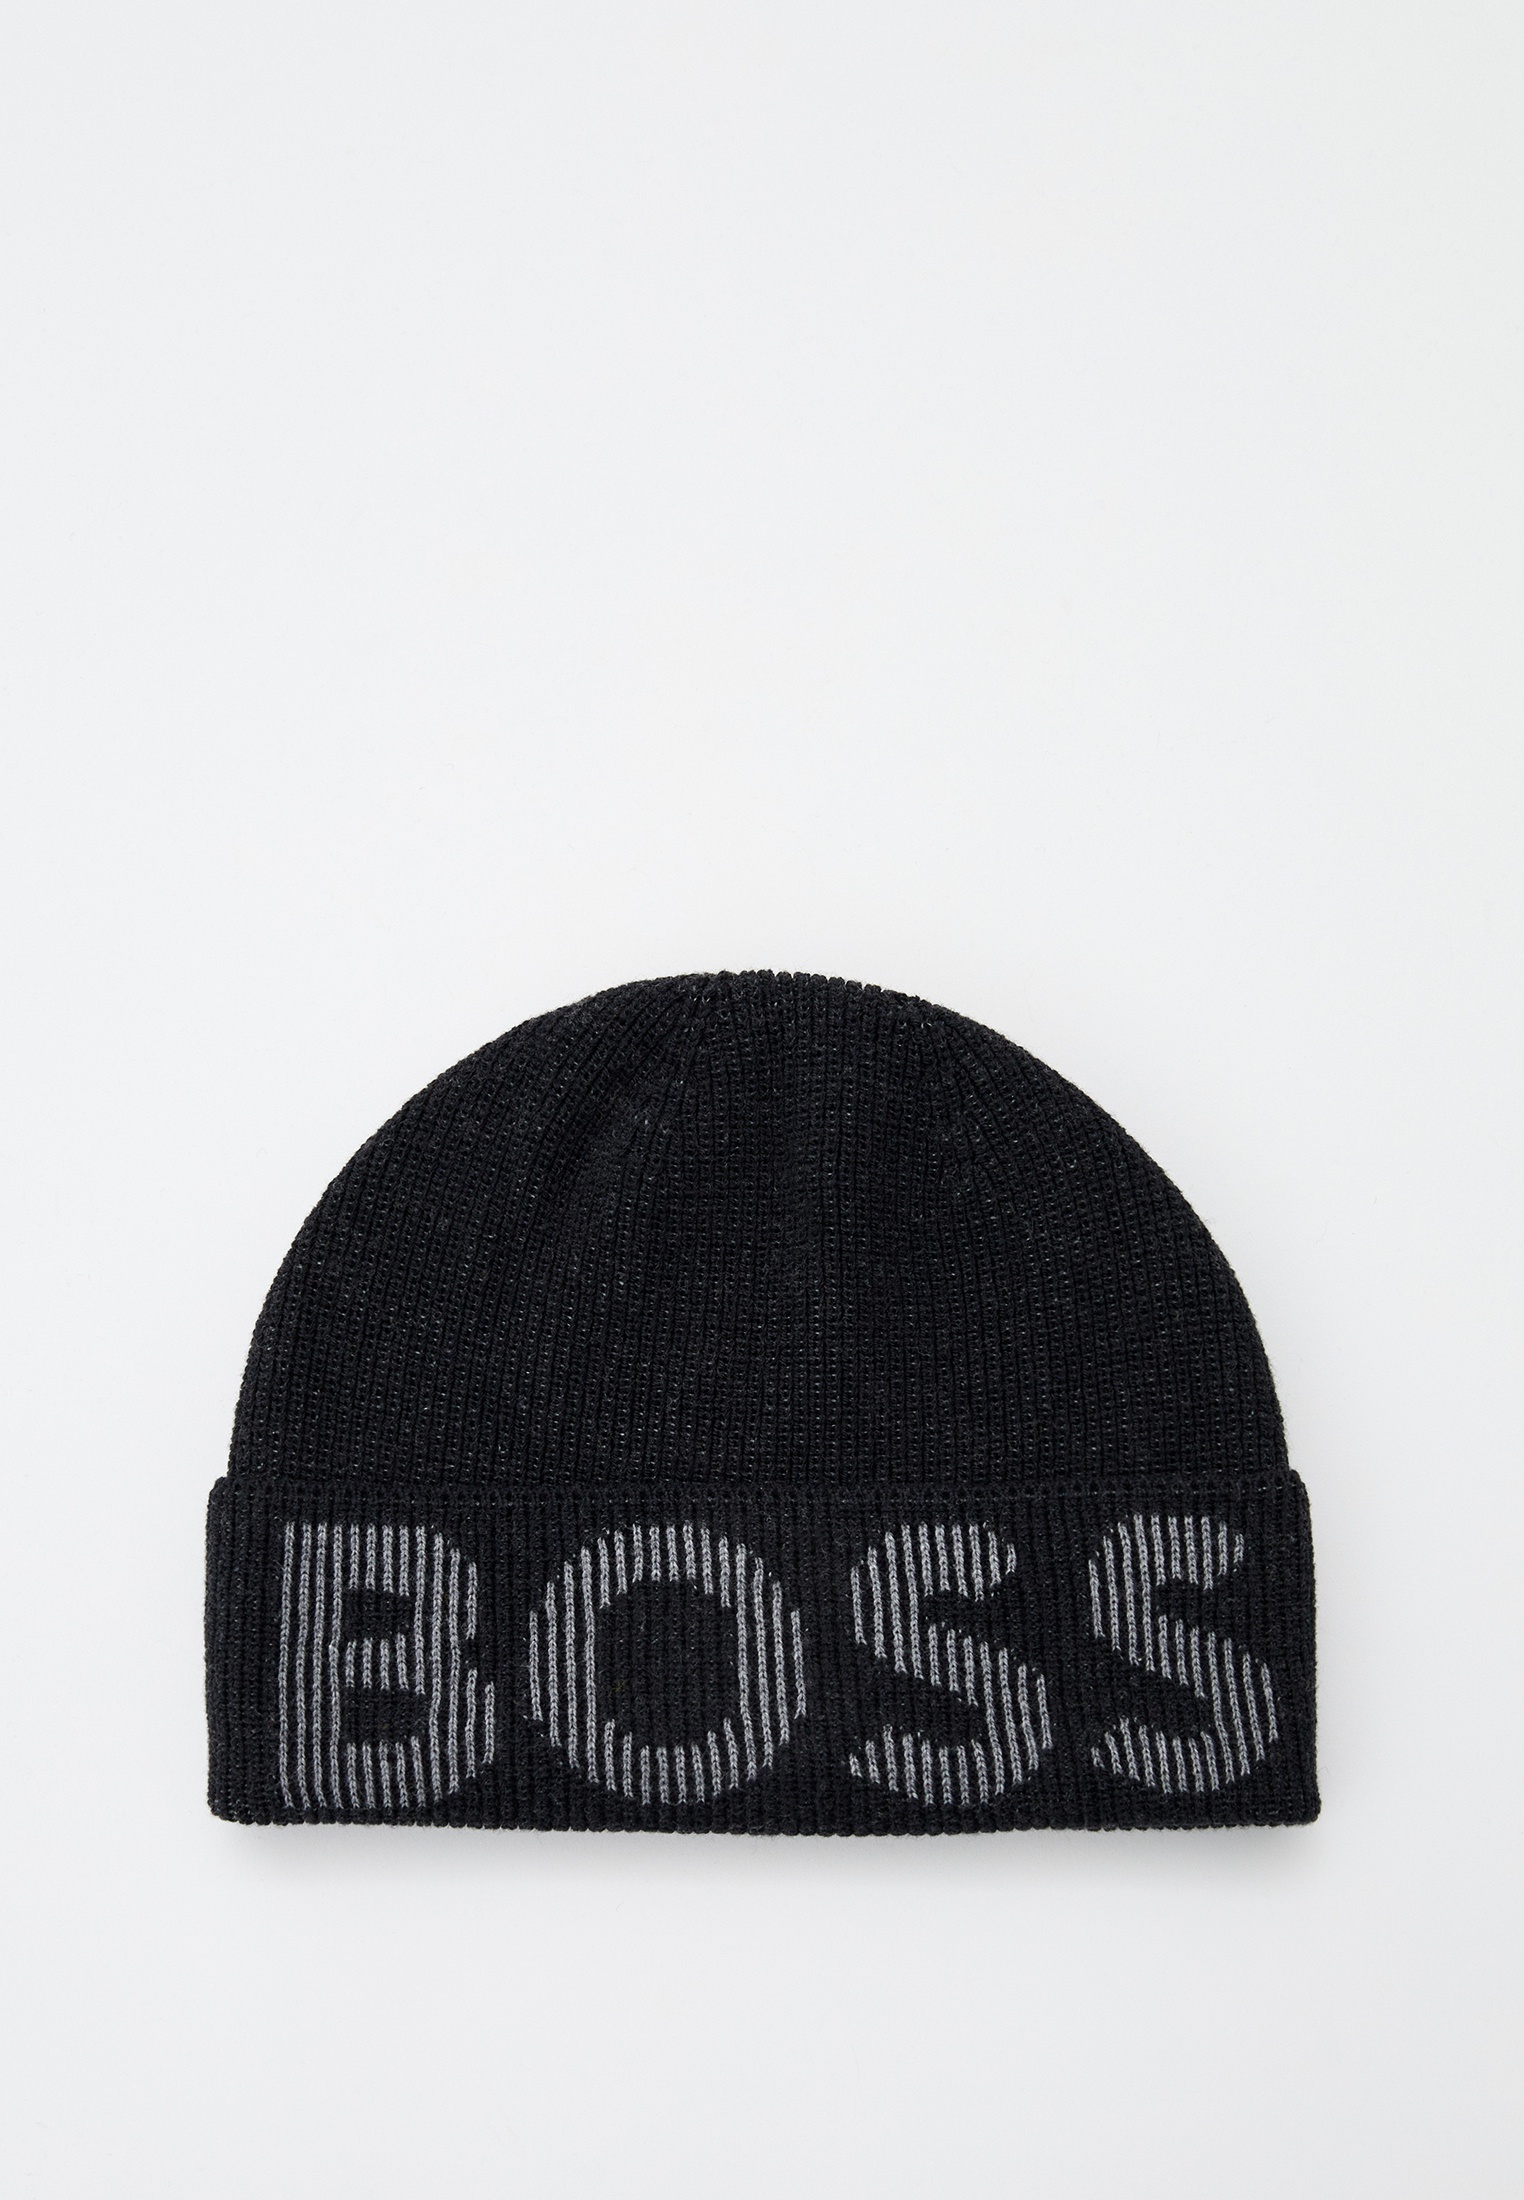 Шапка Boss (Босс) 50495296: изображение 6